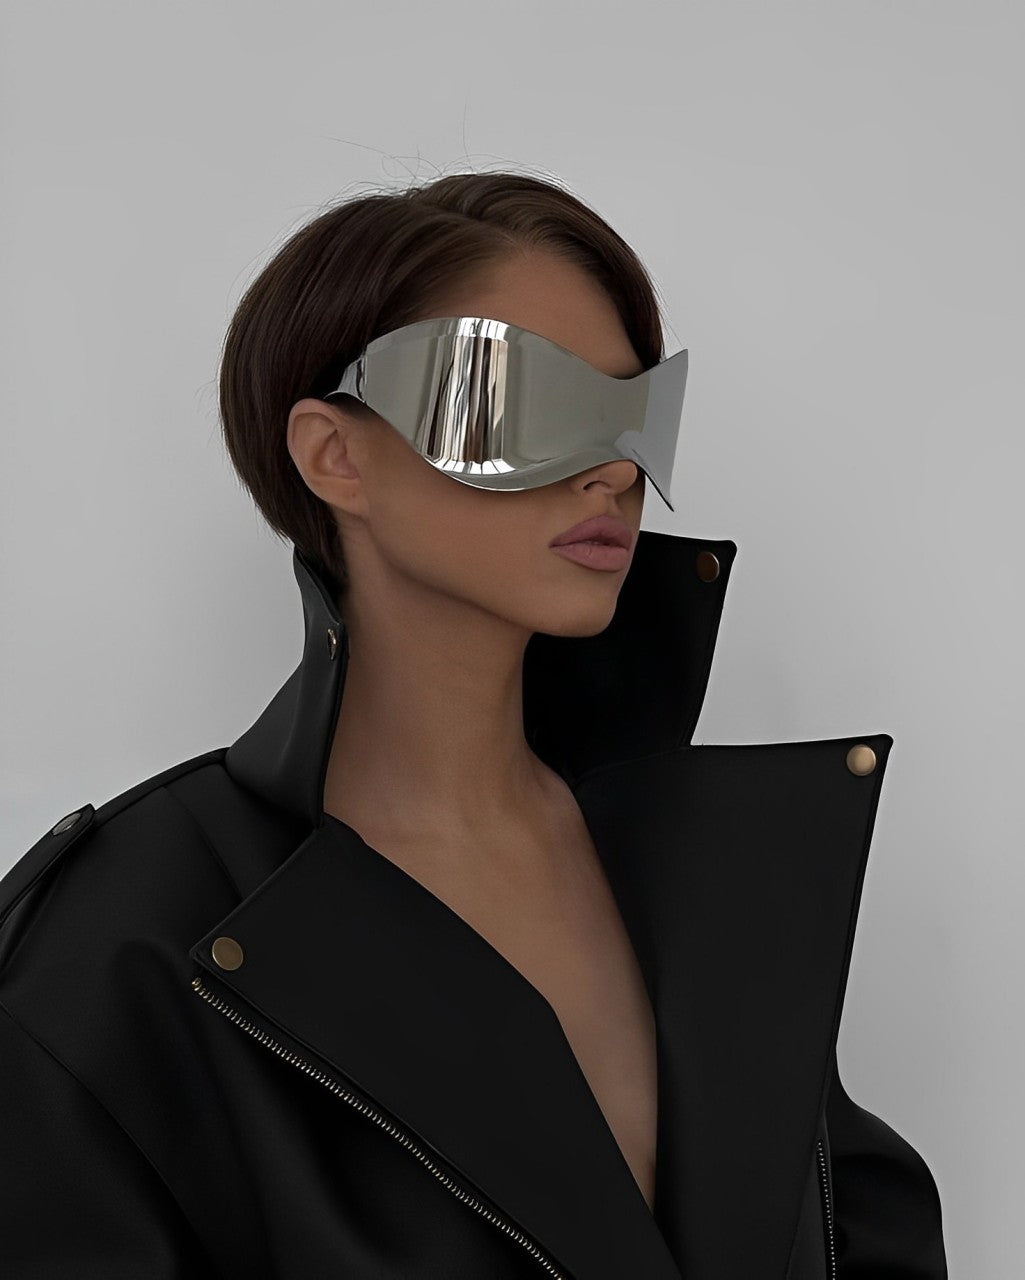 Oculus Glasses